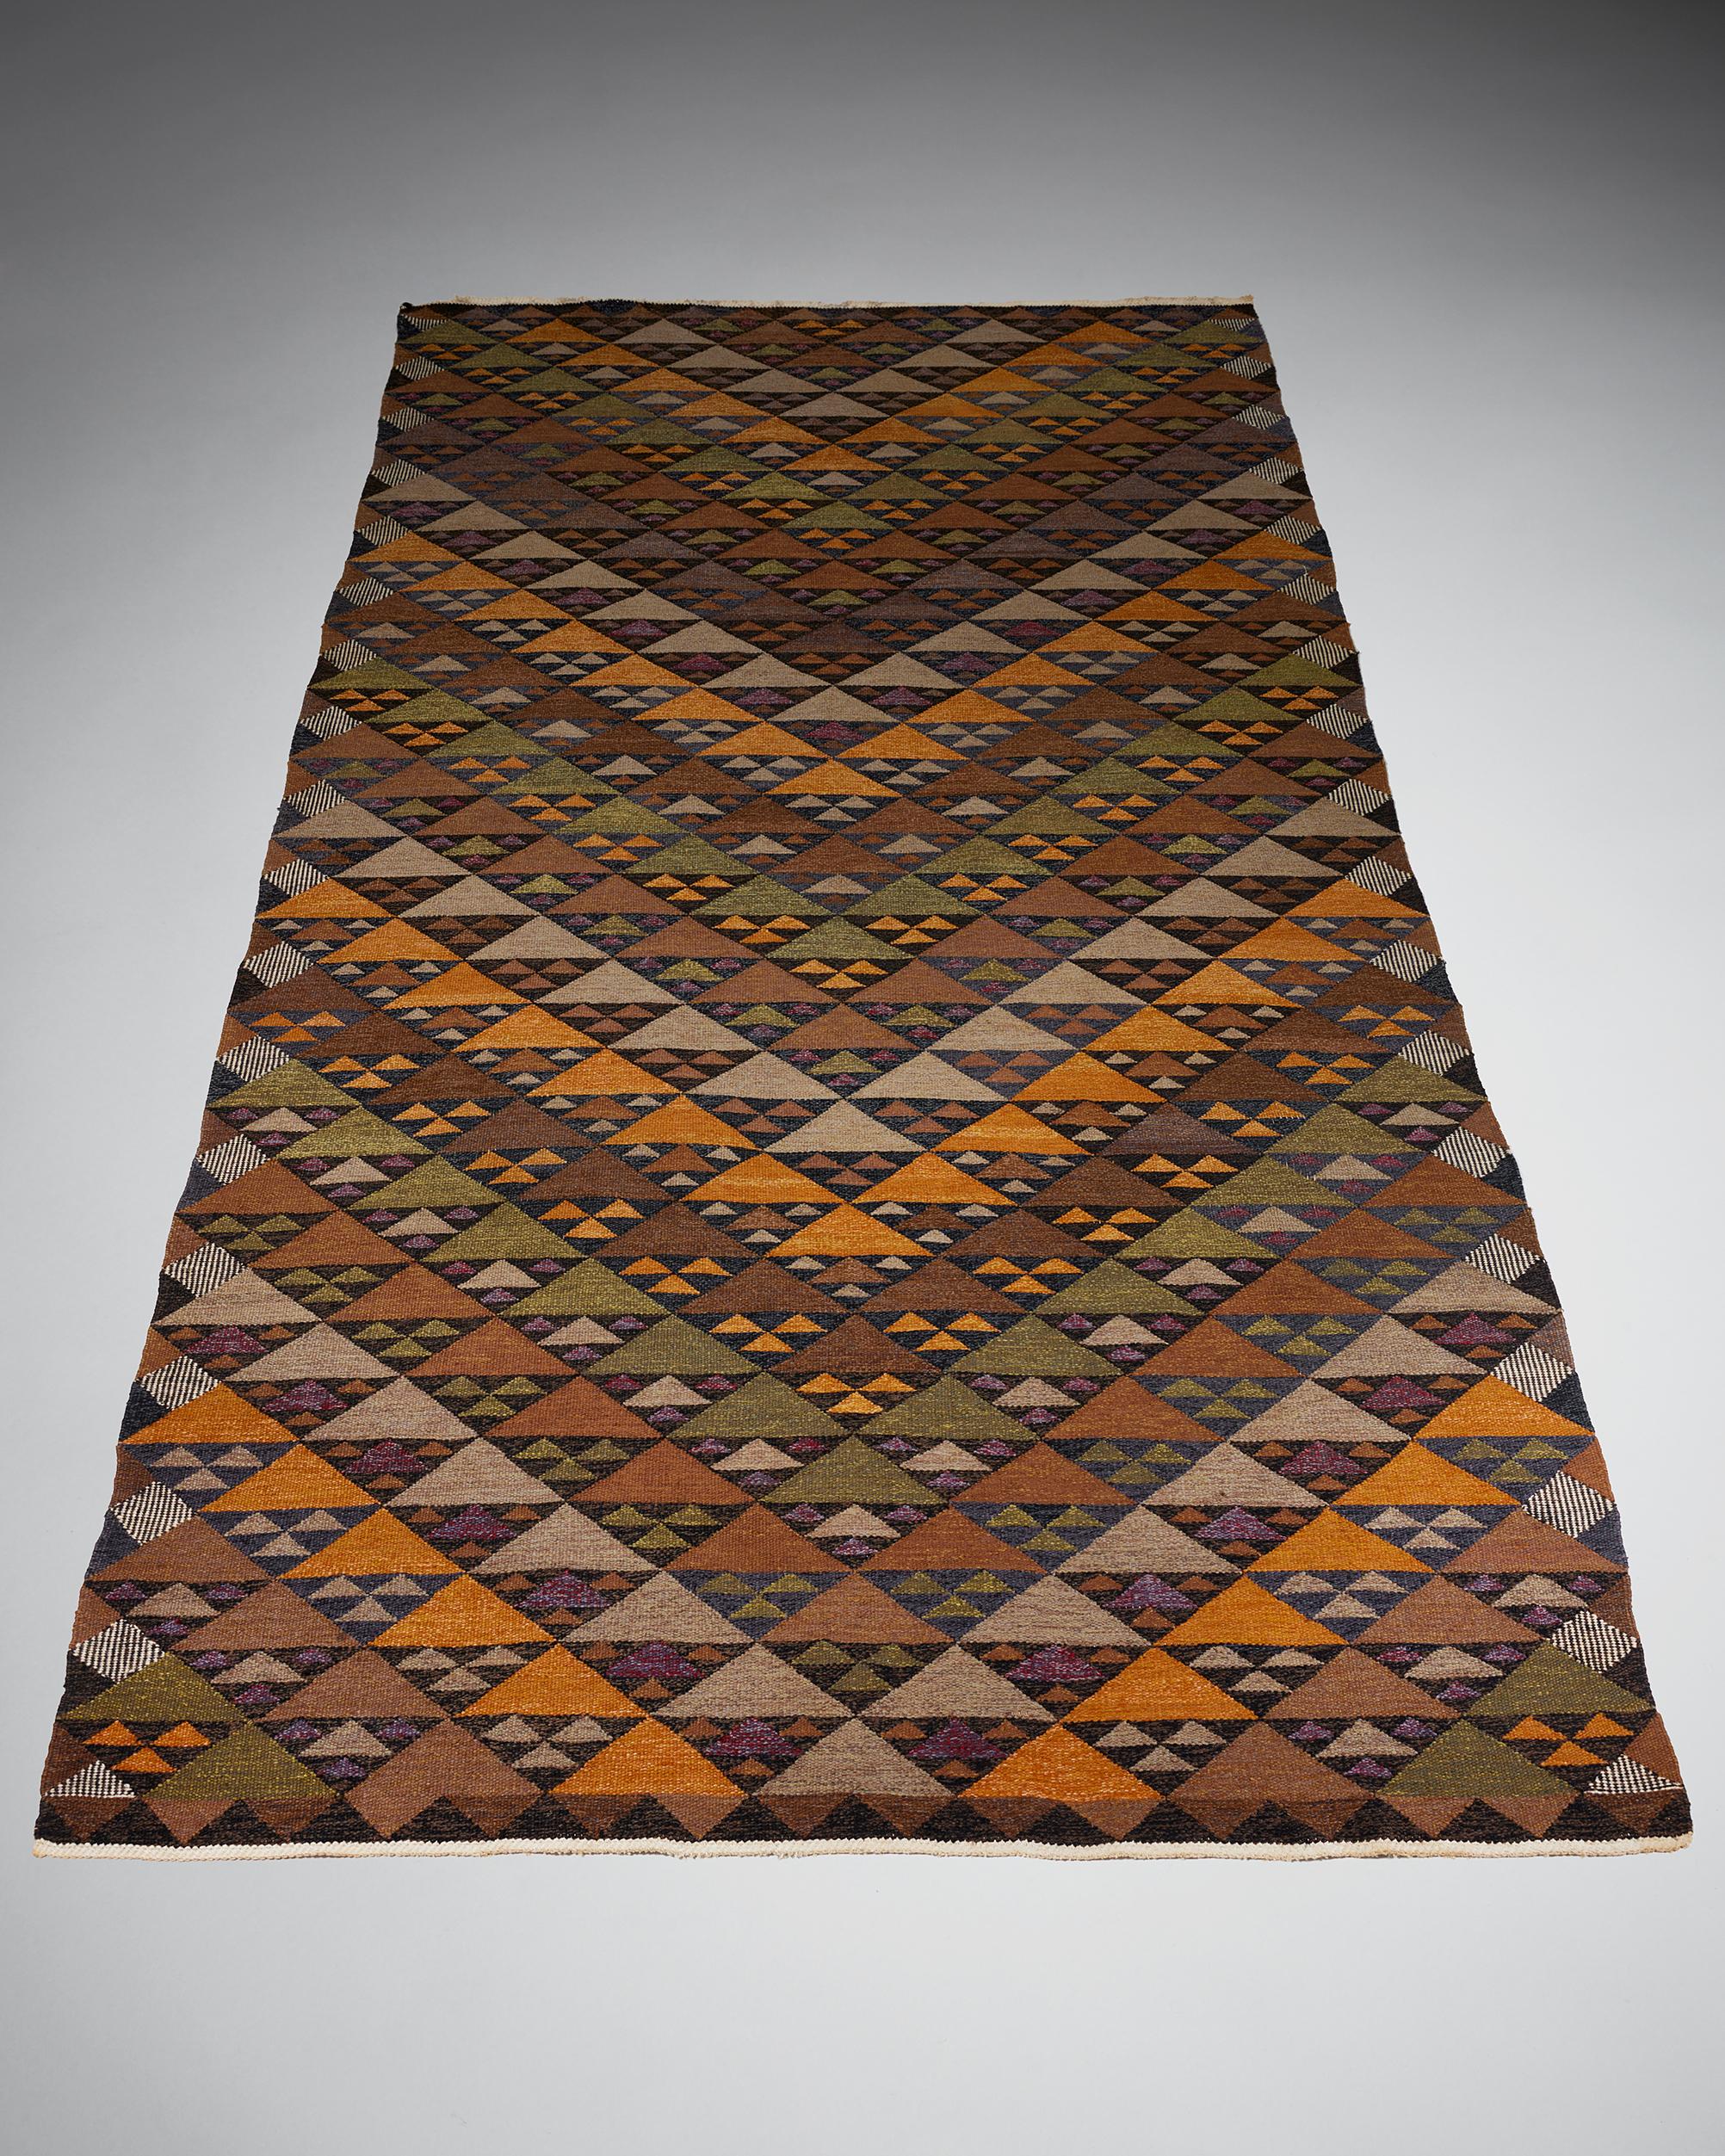 Teppich 'Höst' entworfen von Kirsten und John Becker, Dänemark, 1950er Jahre

Unterschrieben.

Wolle.

L: 415.5 cm
W: 228 cm